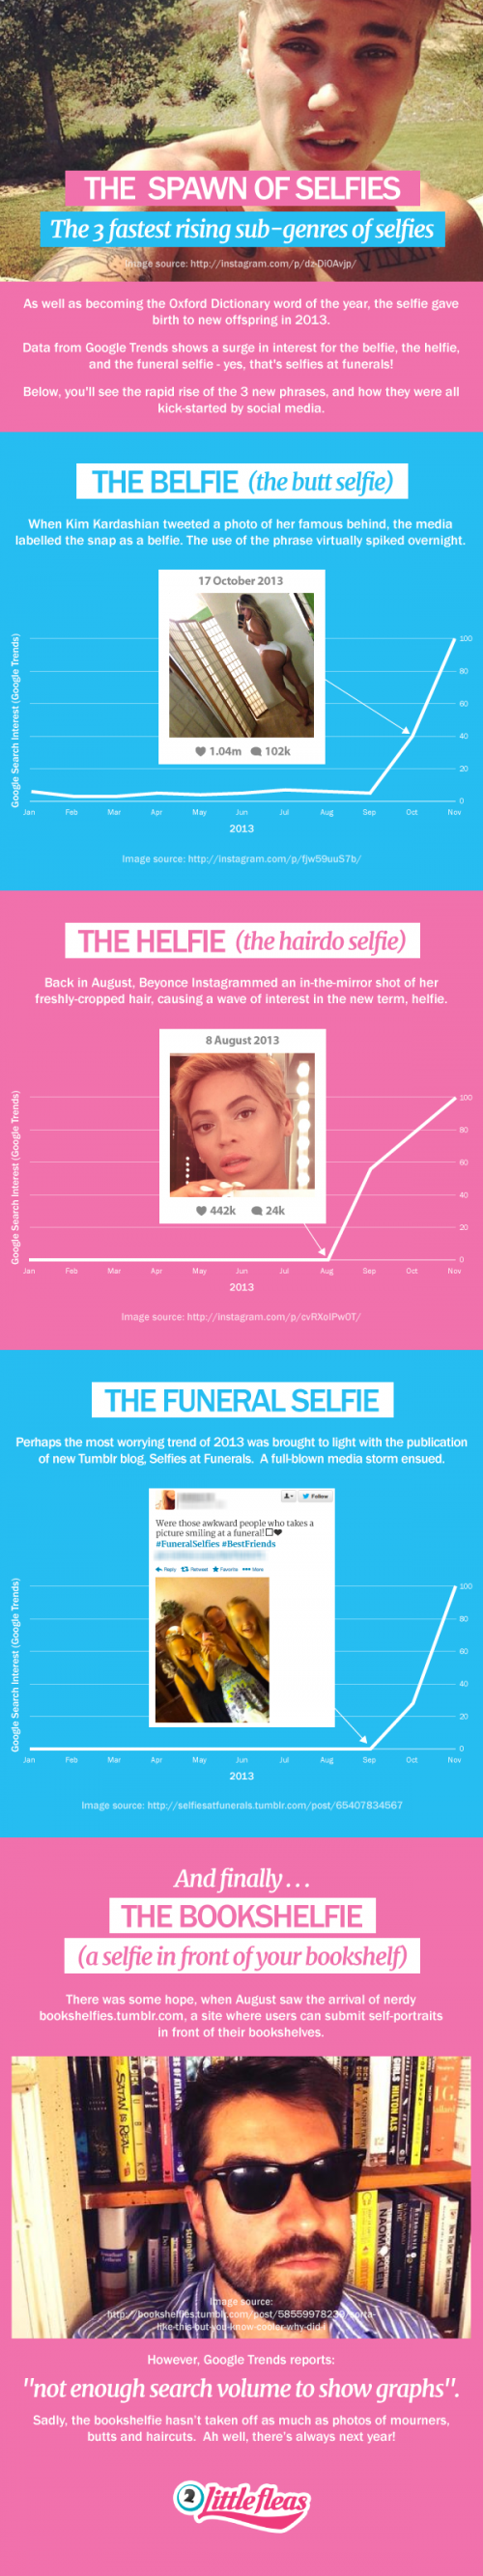 Selfie-Spin-Offs infographic - viralblog.com 